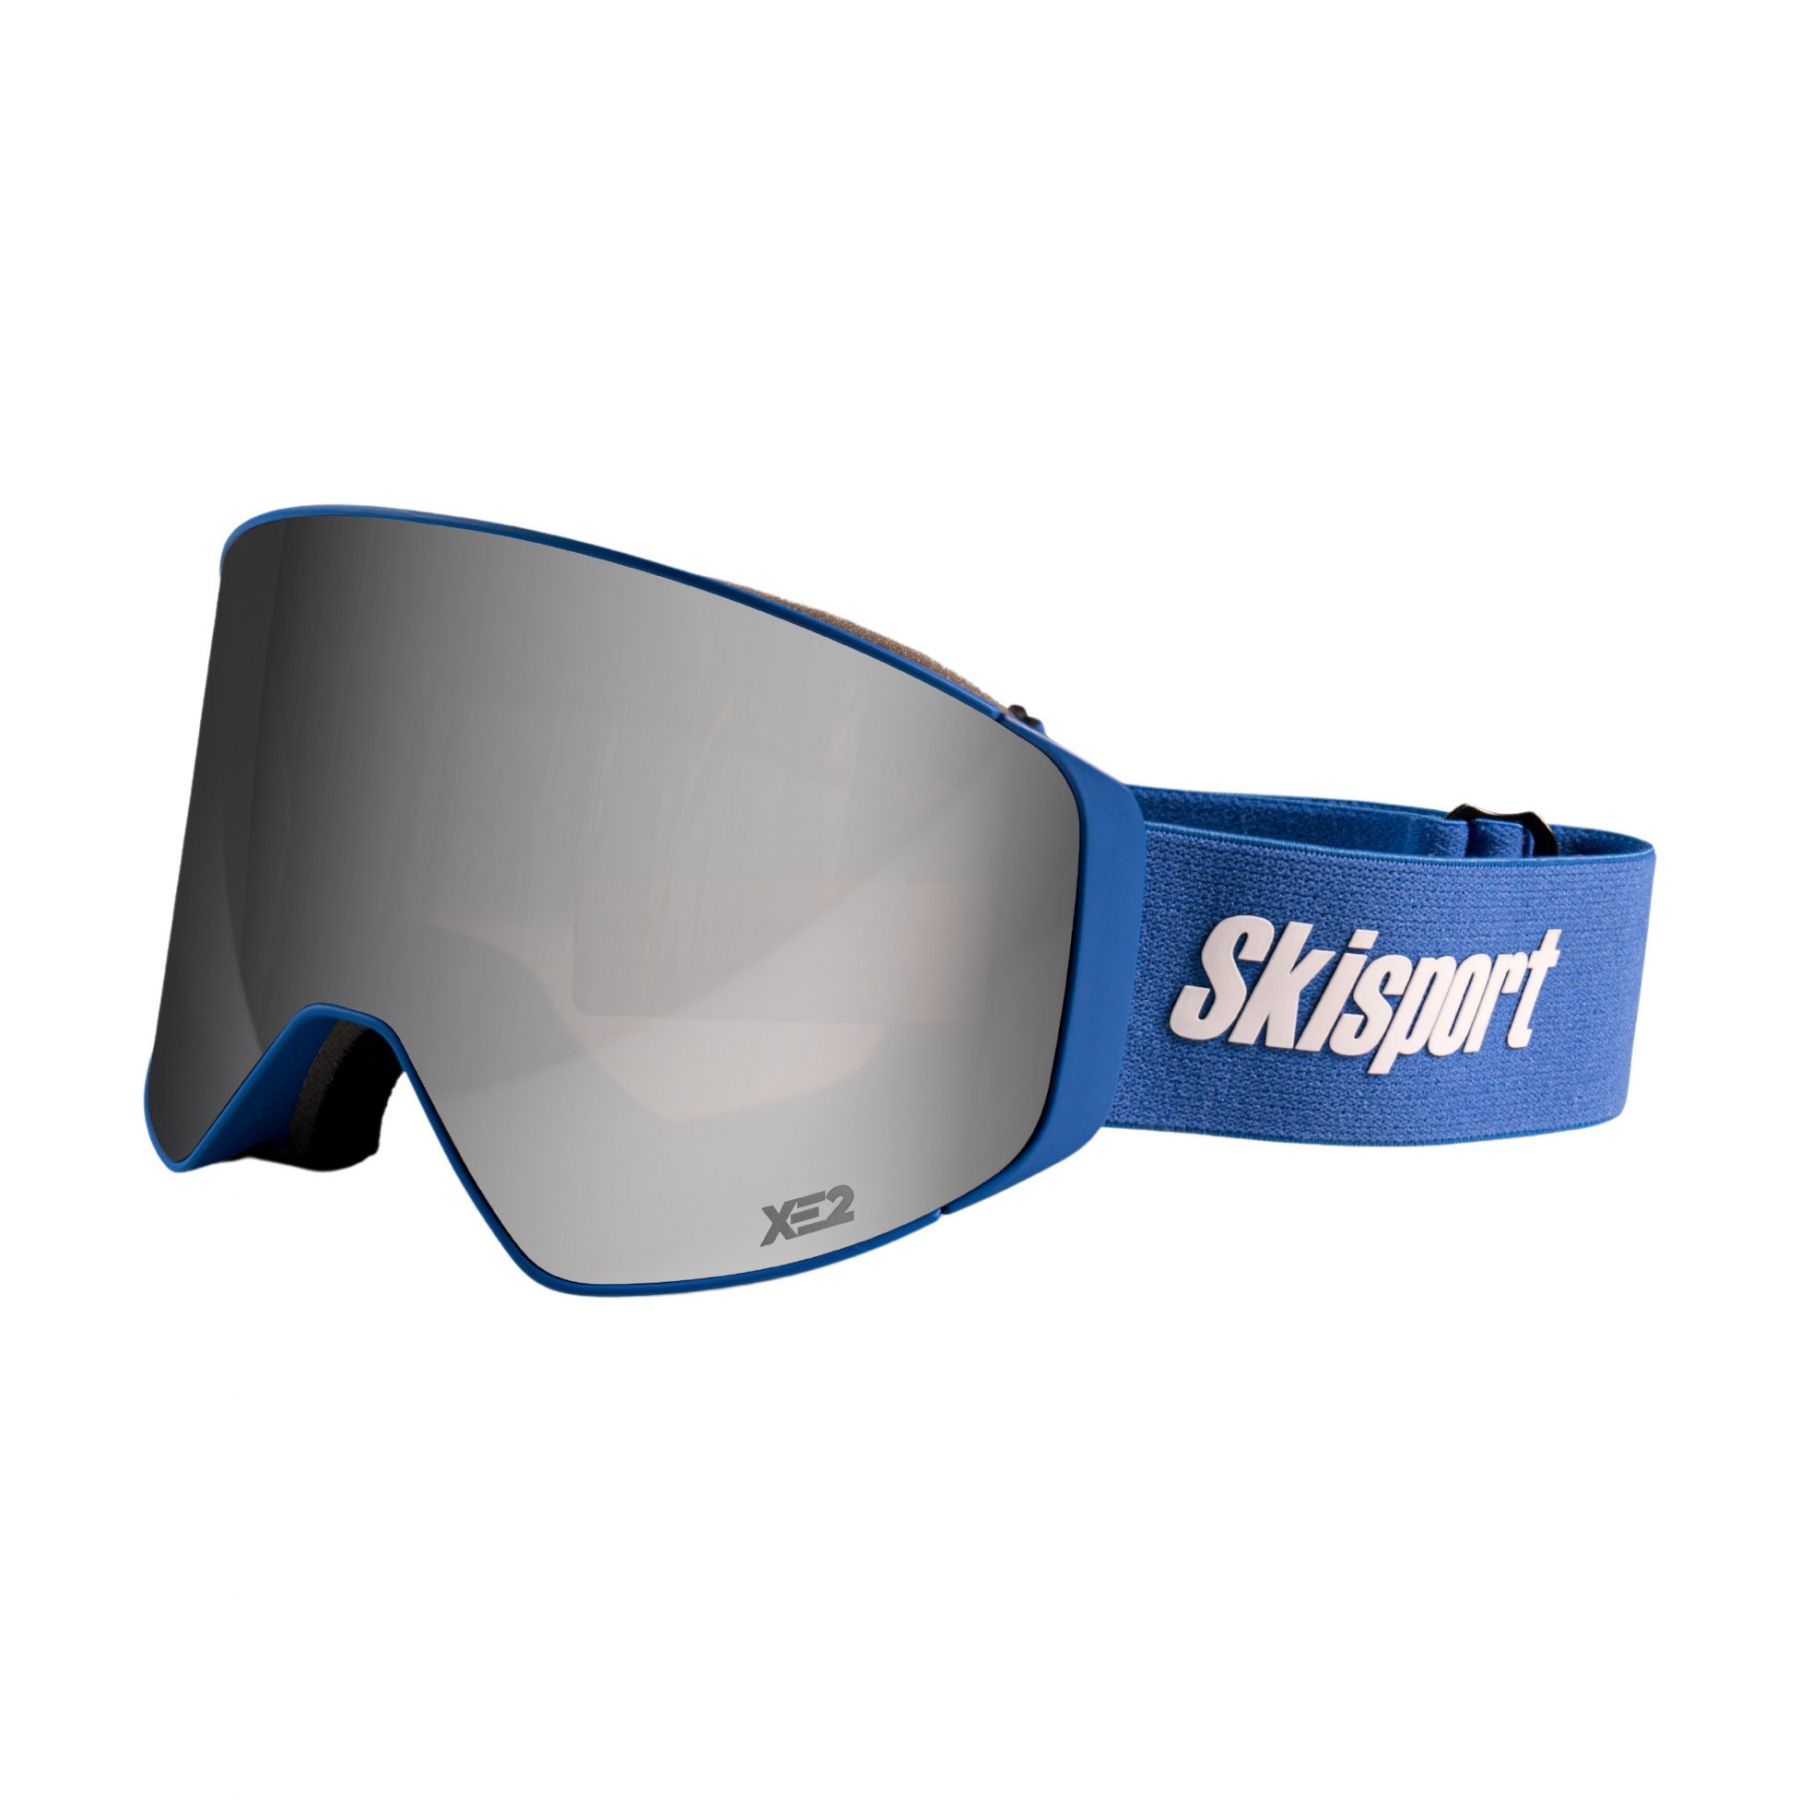 Brug MessyWeekend Clear XE2, skibriller, blå, Limited Edition, Skisport.dk til en forbedret oplevelse